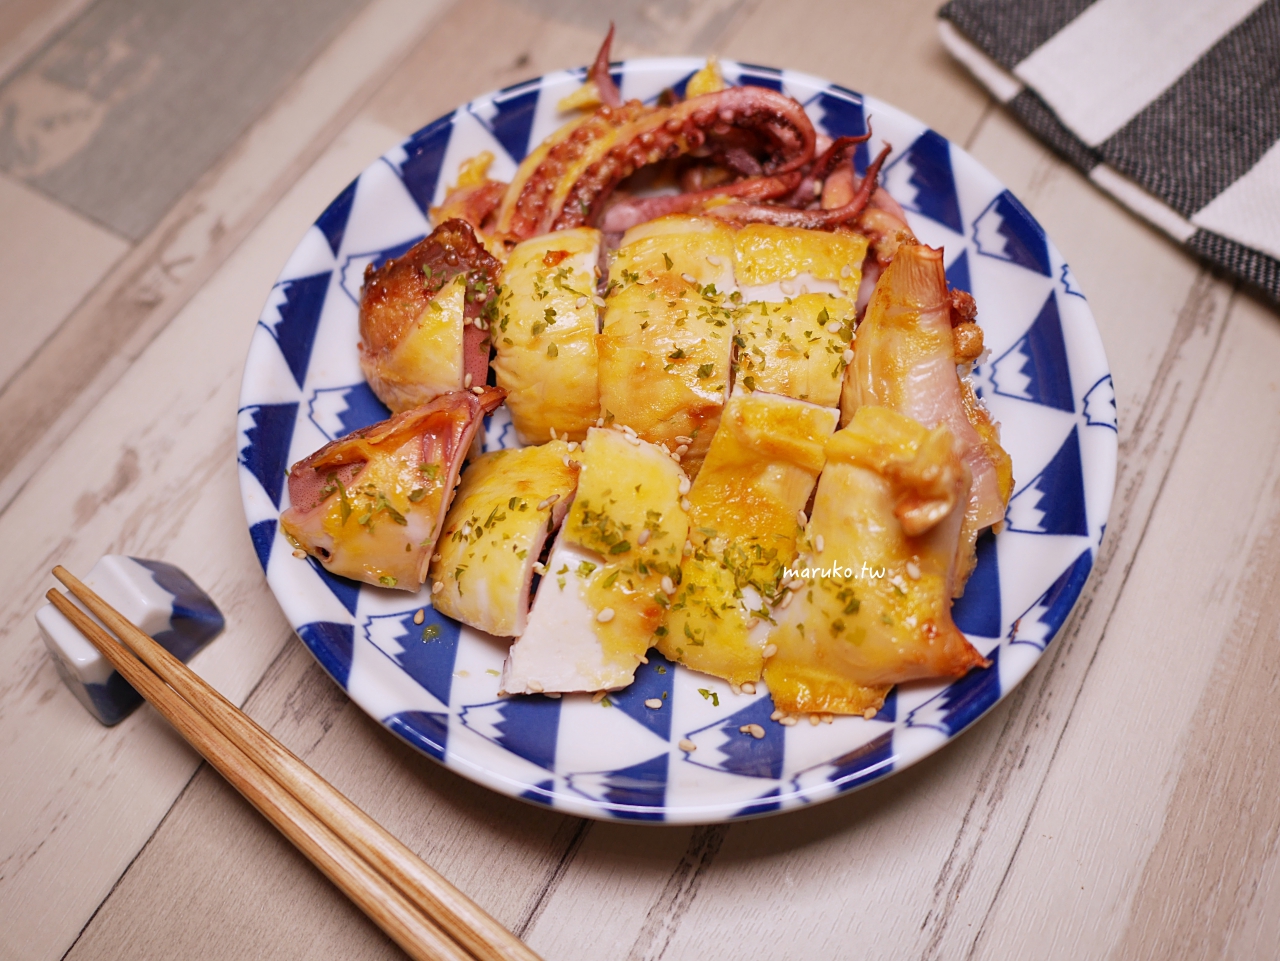 【食譜】蛋烤小卷 魷魚一夜干氣炸鍋食譜 海產店的招牌菜簡單就上手